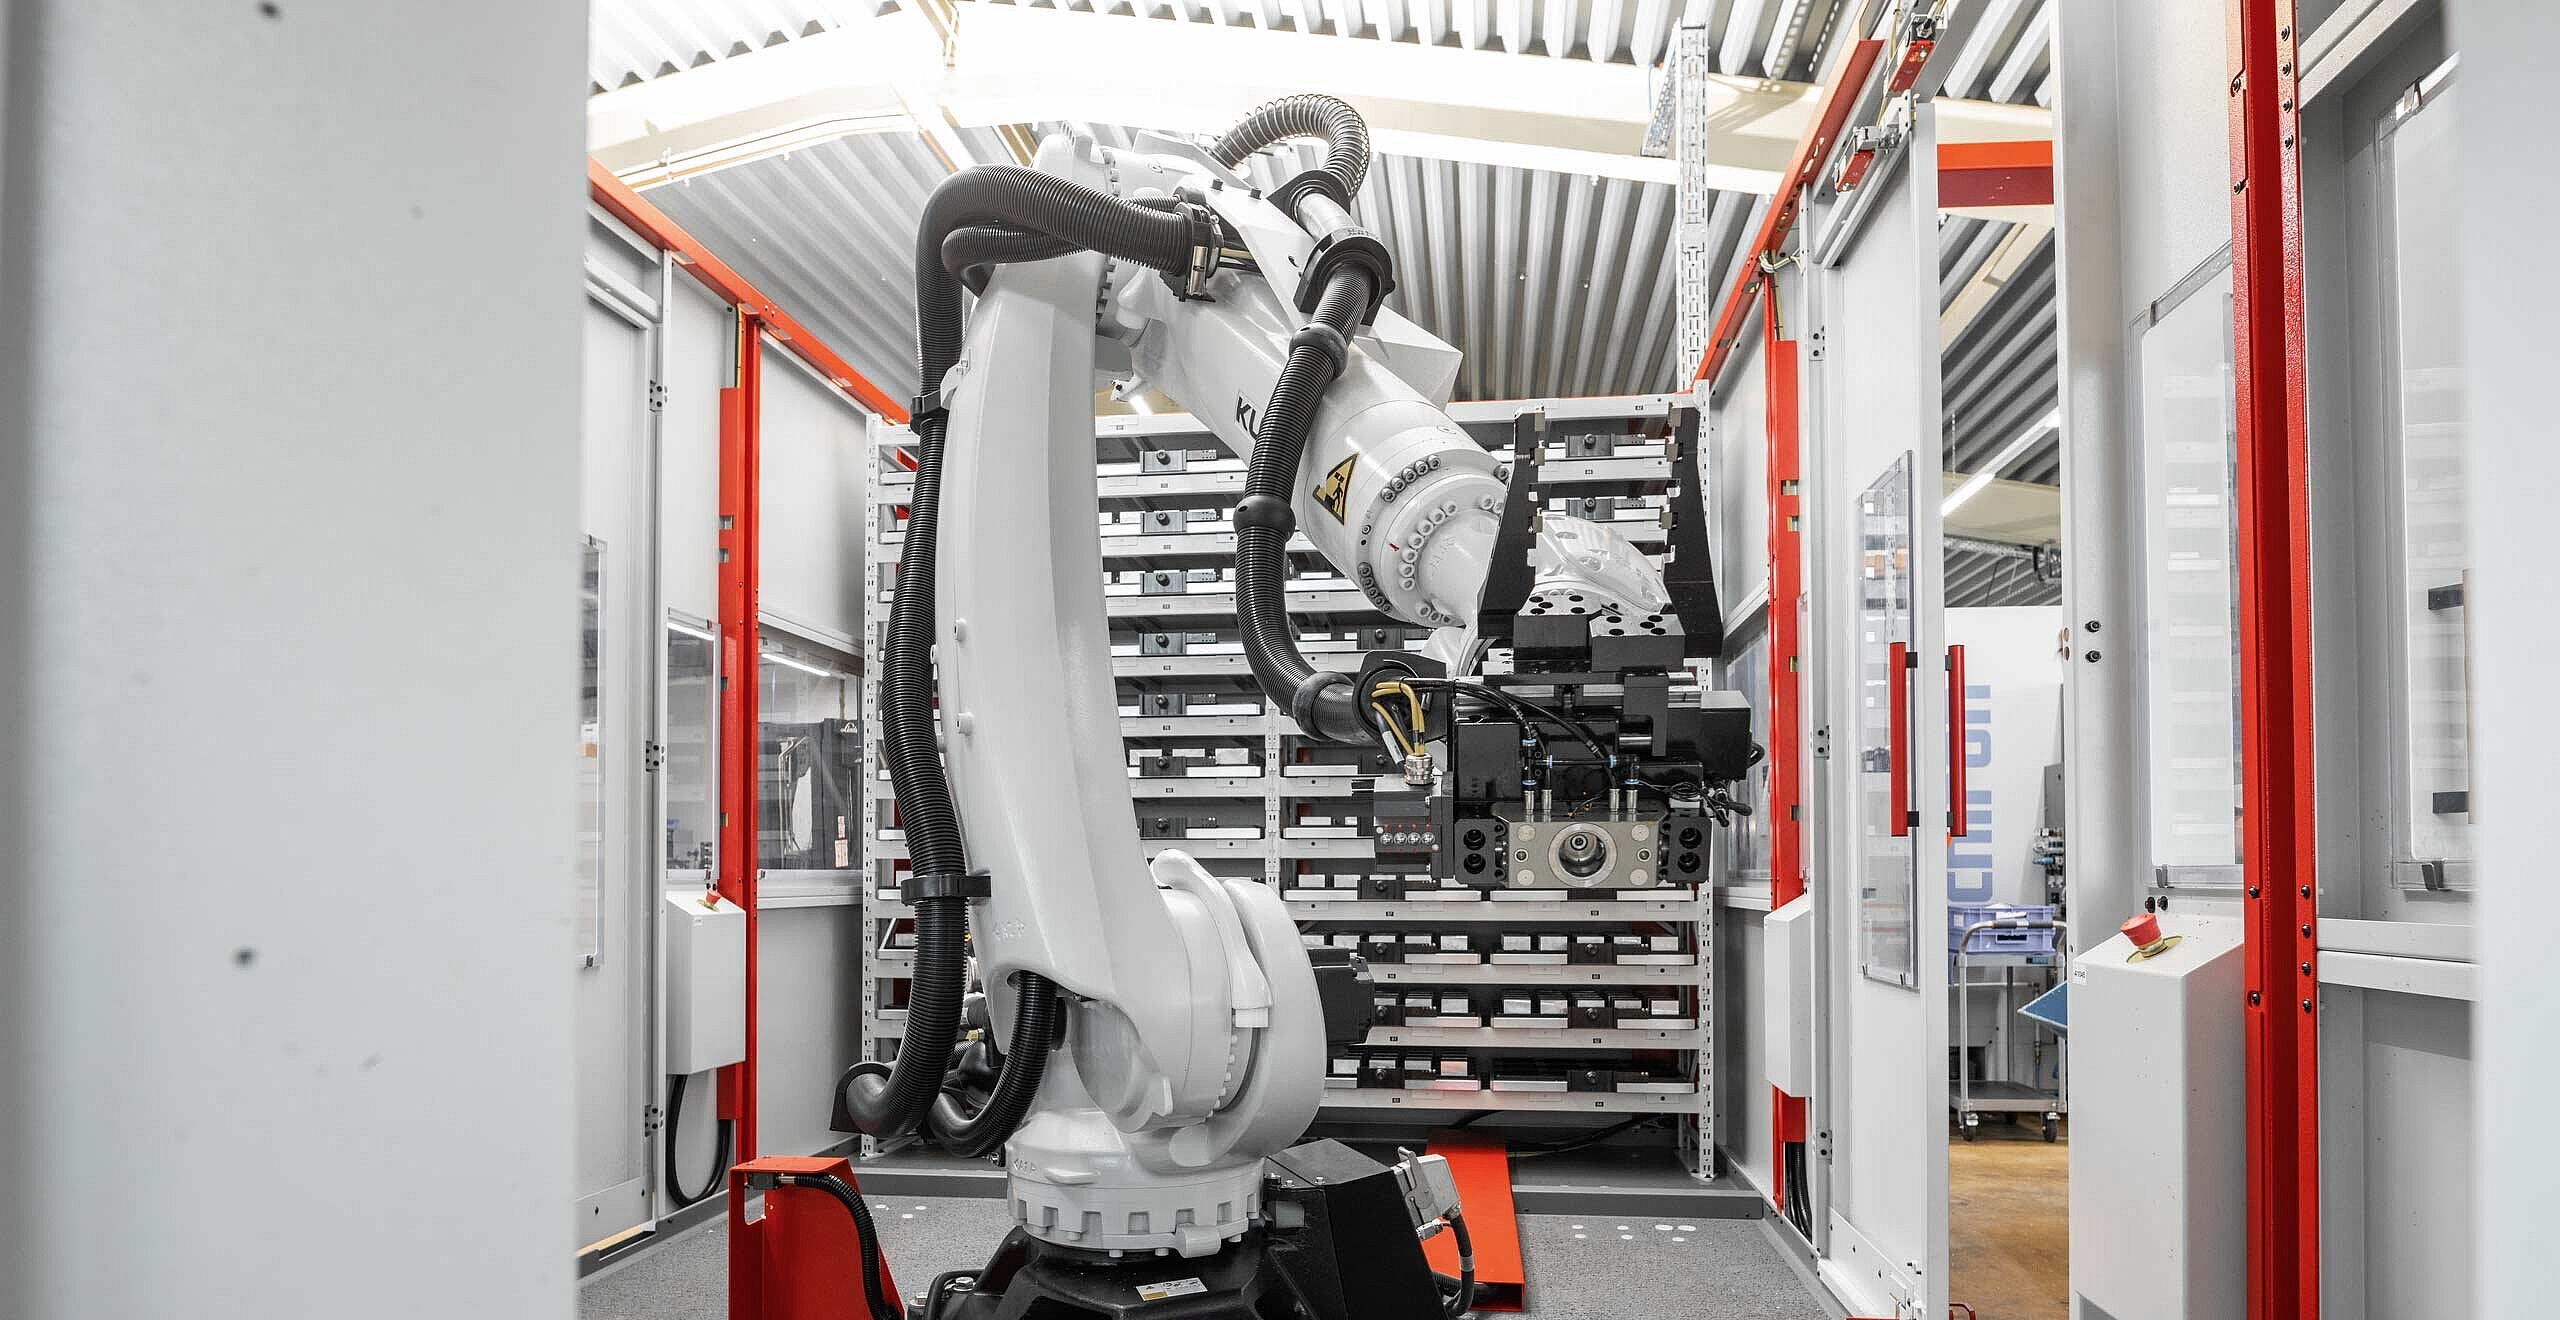 Robotersystem RS 2 in der Draufsicht, bestehend aus dem Roboter mit Greifer sowie den links und rechts angeordnete Palettenplätzen